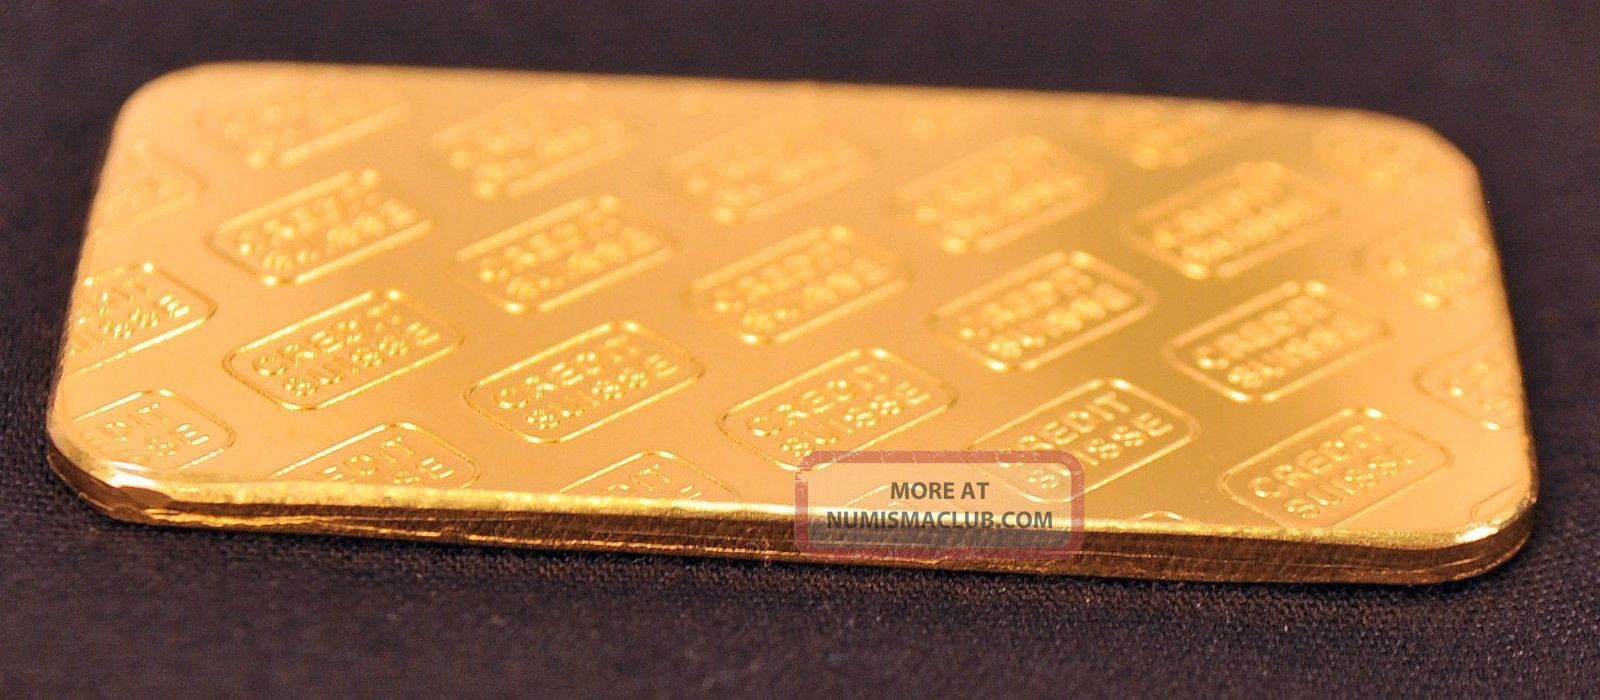 1 oz. credit suisse gold bar